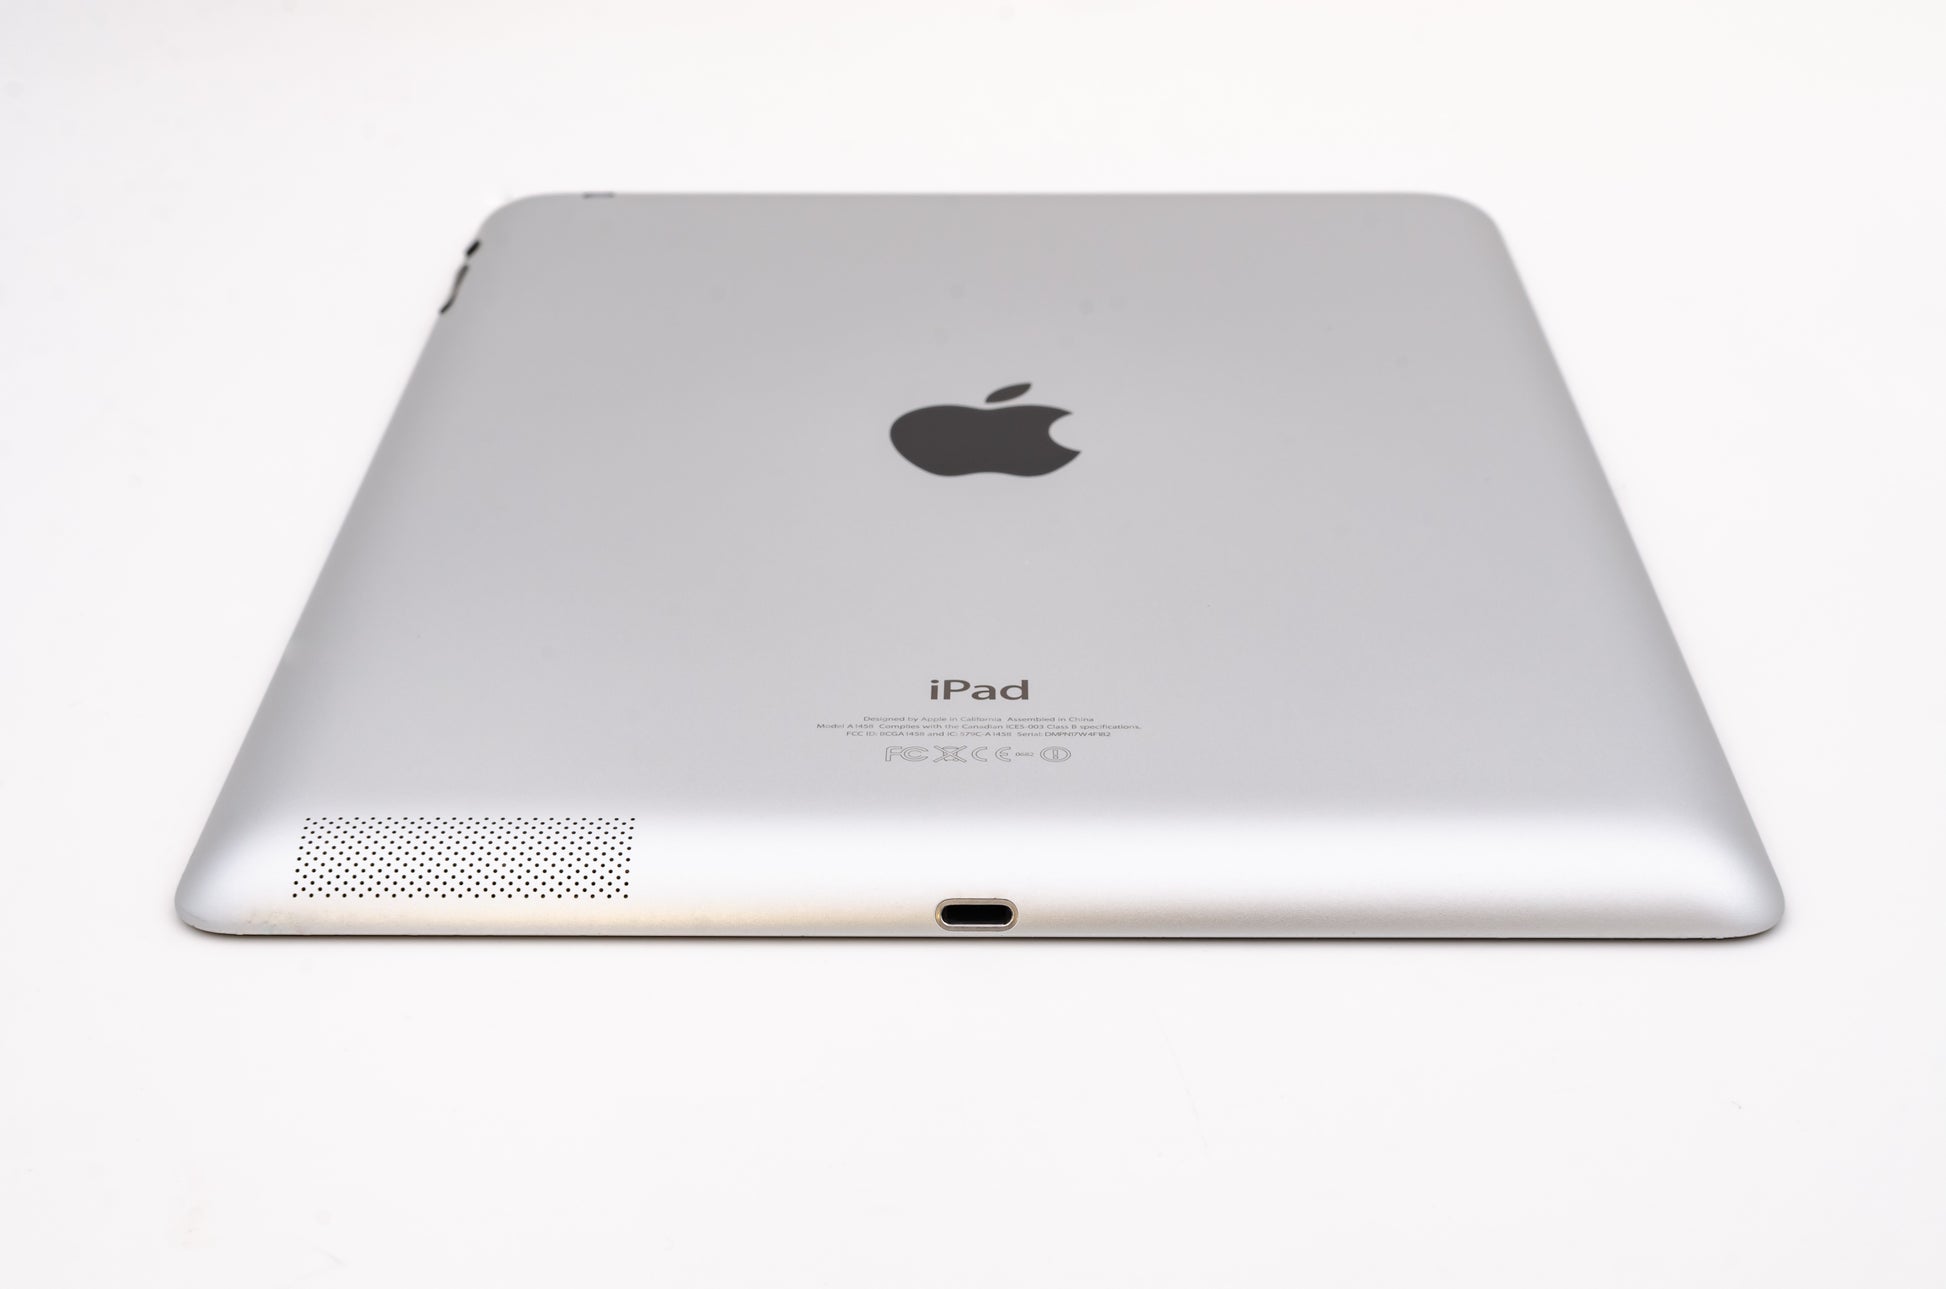 apple-2012-9.7-inch-ipad-4-a1459-silver/black-5